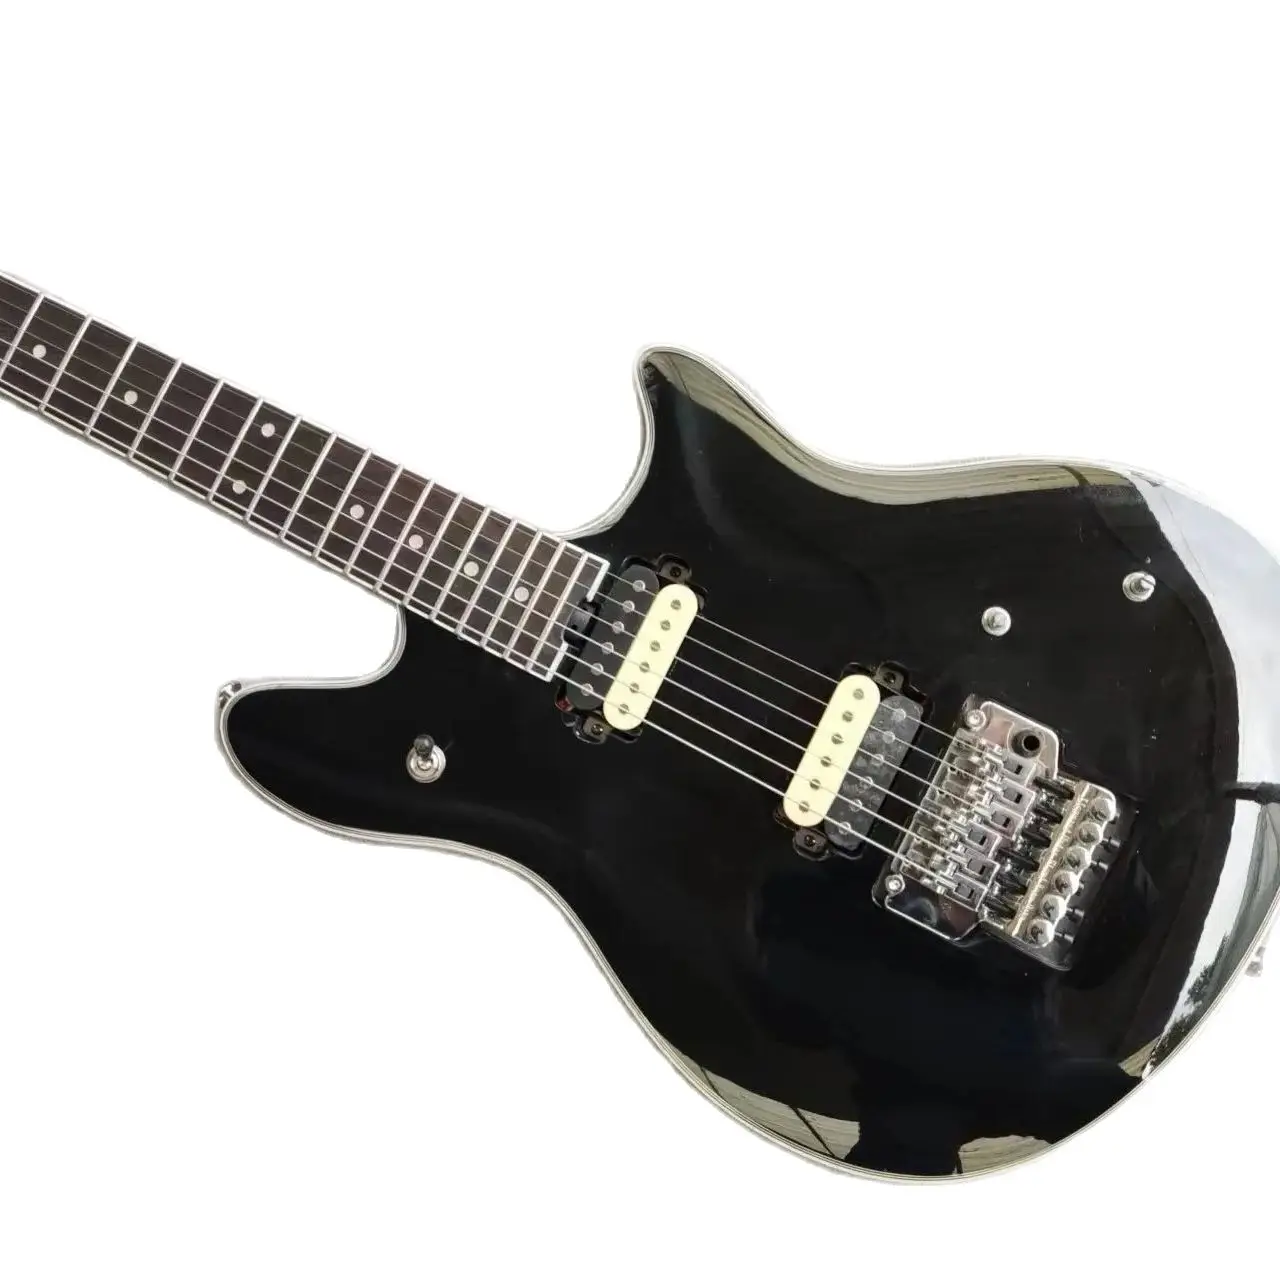 Fabrika özelleştirilmiş siyah vibrato imza elektro gitar, ihtiyaçlarına göre özelleştirilebilir, ücretsiz teslimat